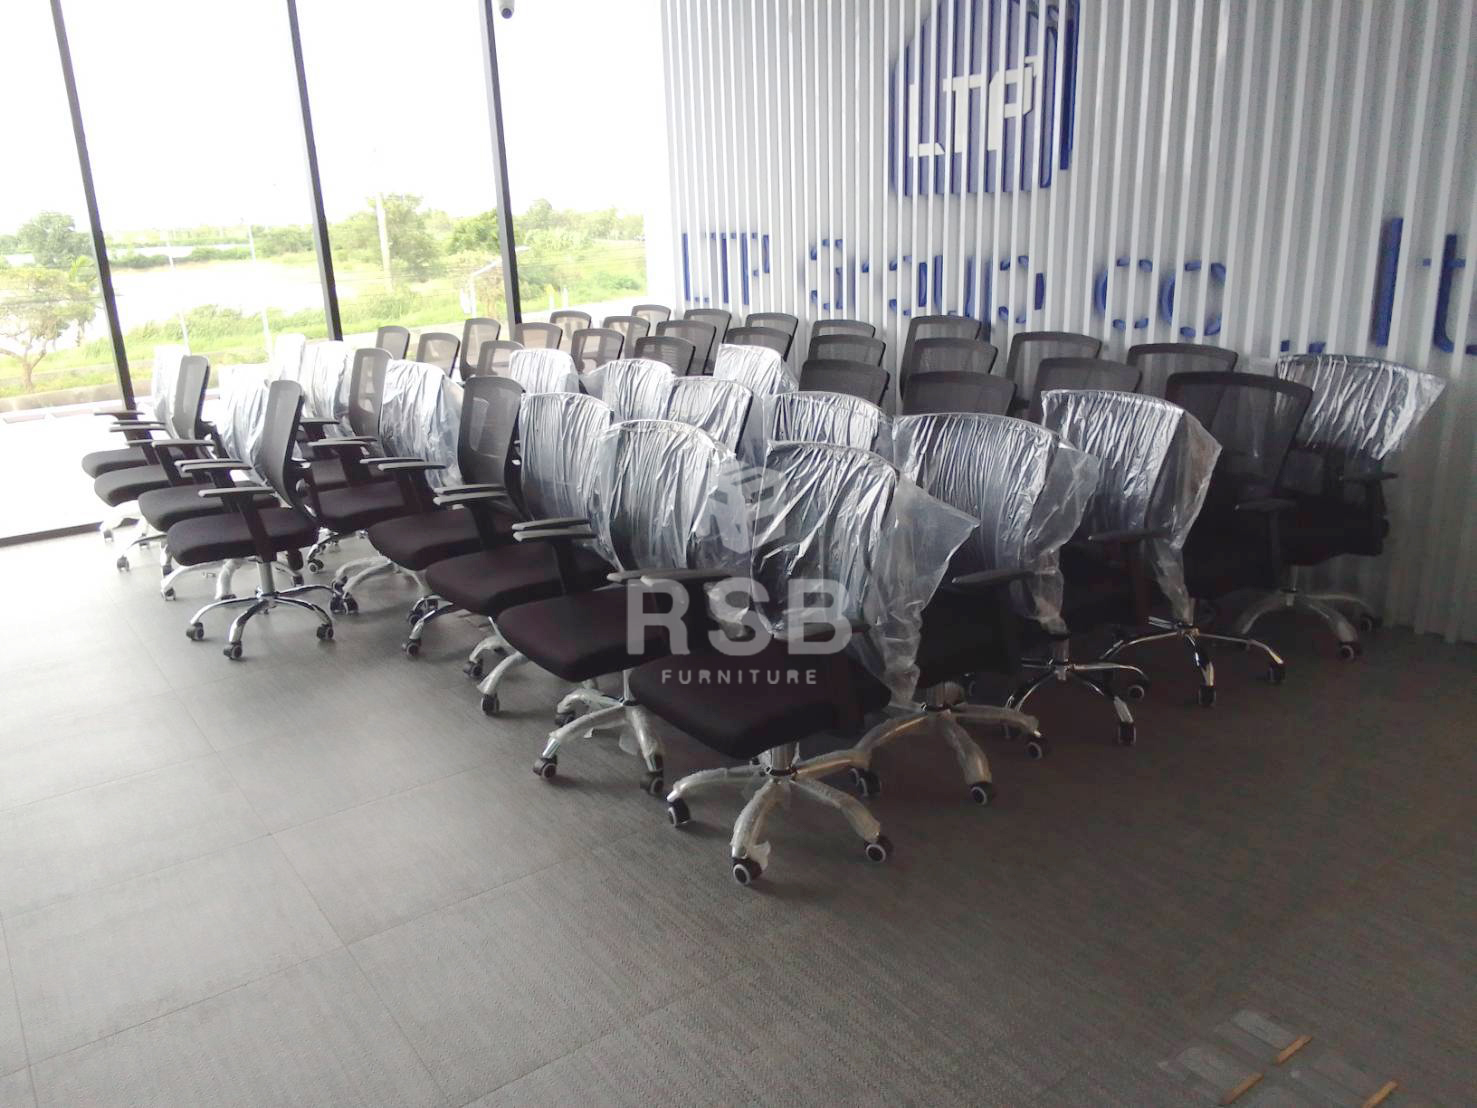 ผลงาน จัดส่งเก้าอี้สำนักงาน โครงเก้าอี้แบบหนา ตาข่ายแบบเหนียวพิเศษ จำนวน 45 ที่บริษัทลูกค้า